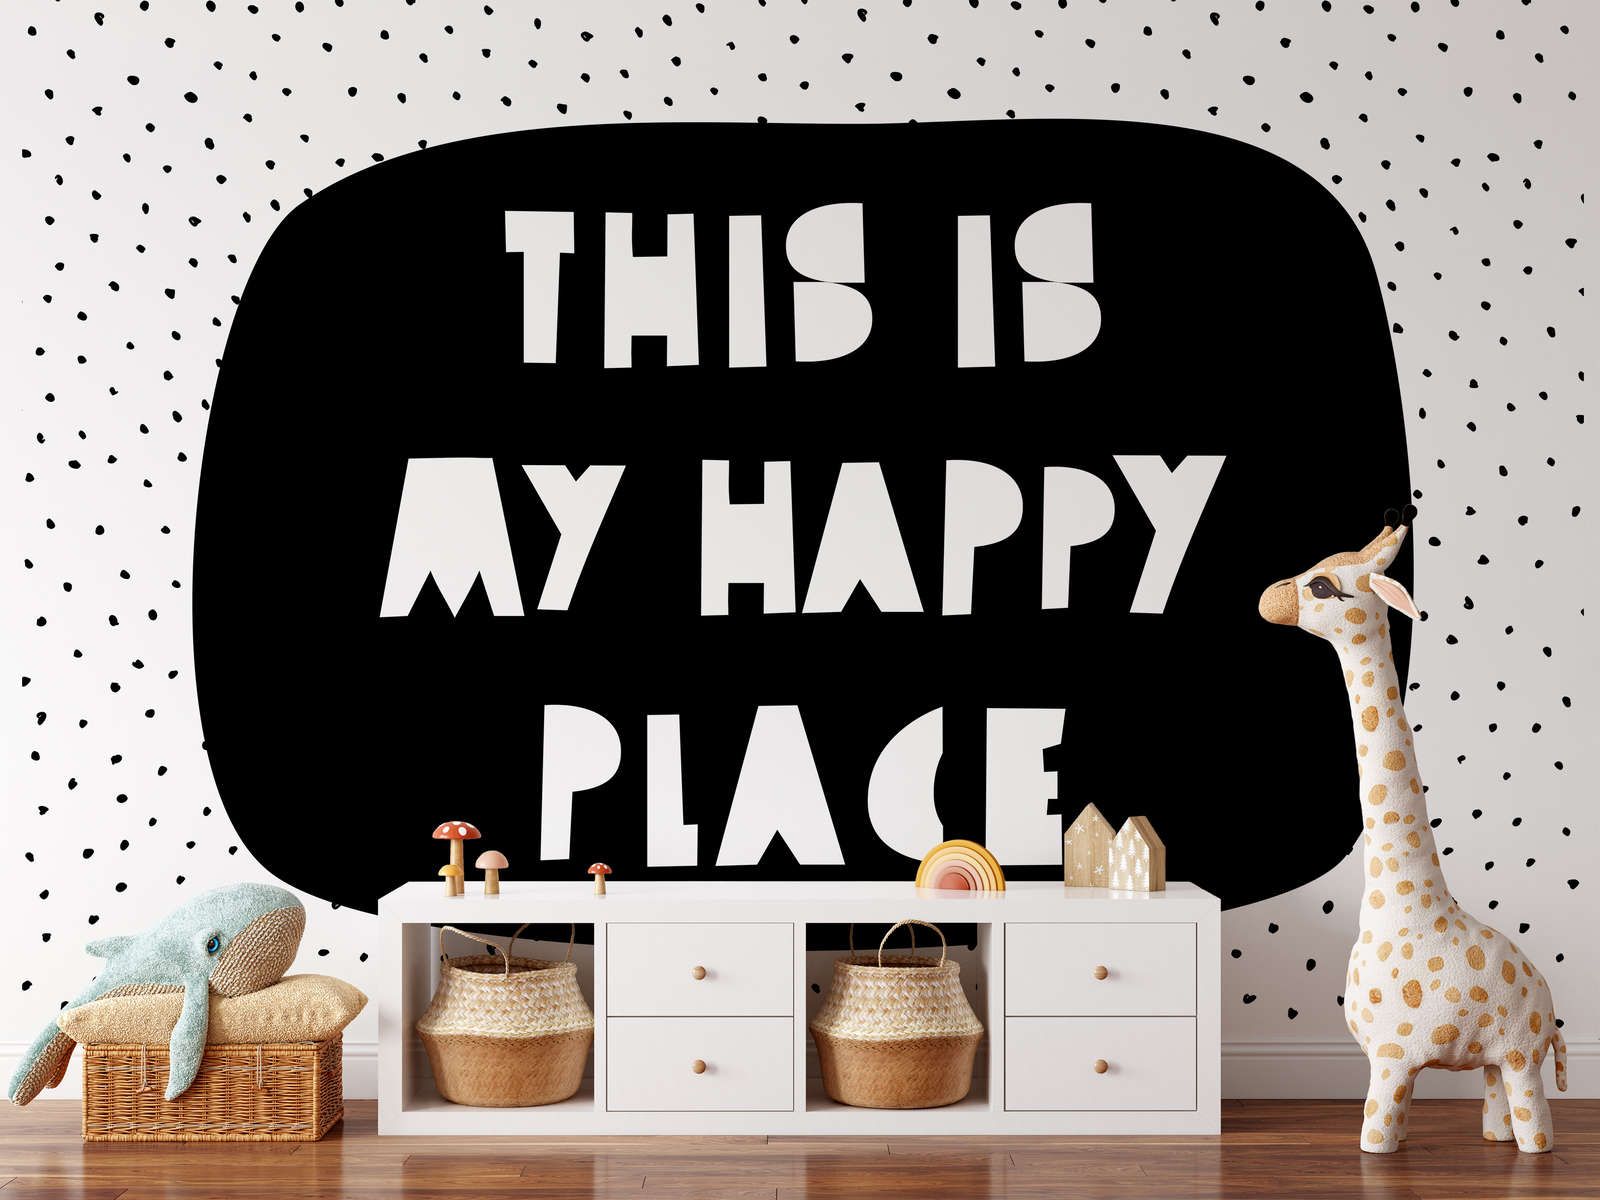             Kinderkamer muurschildering met "This is my happy place" belettering - Glad & parelmoer non-woven
        